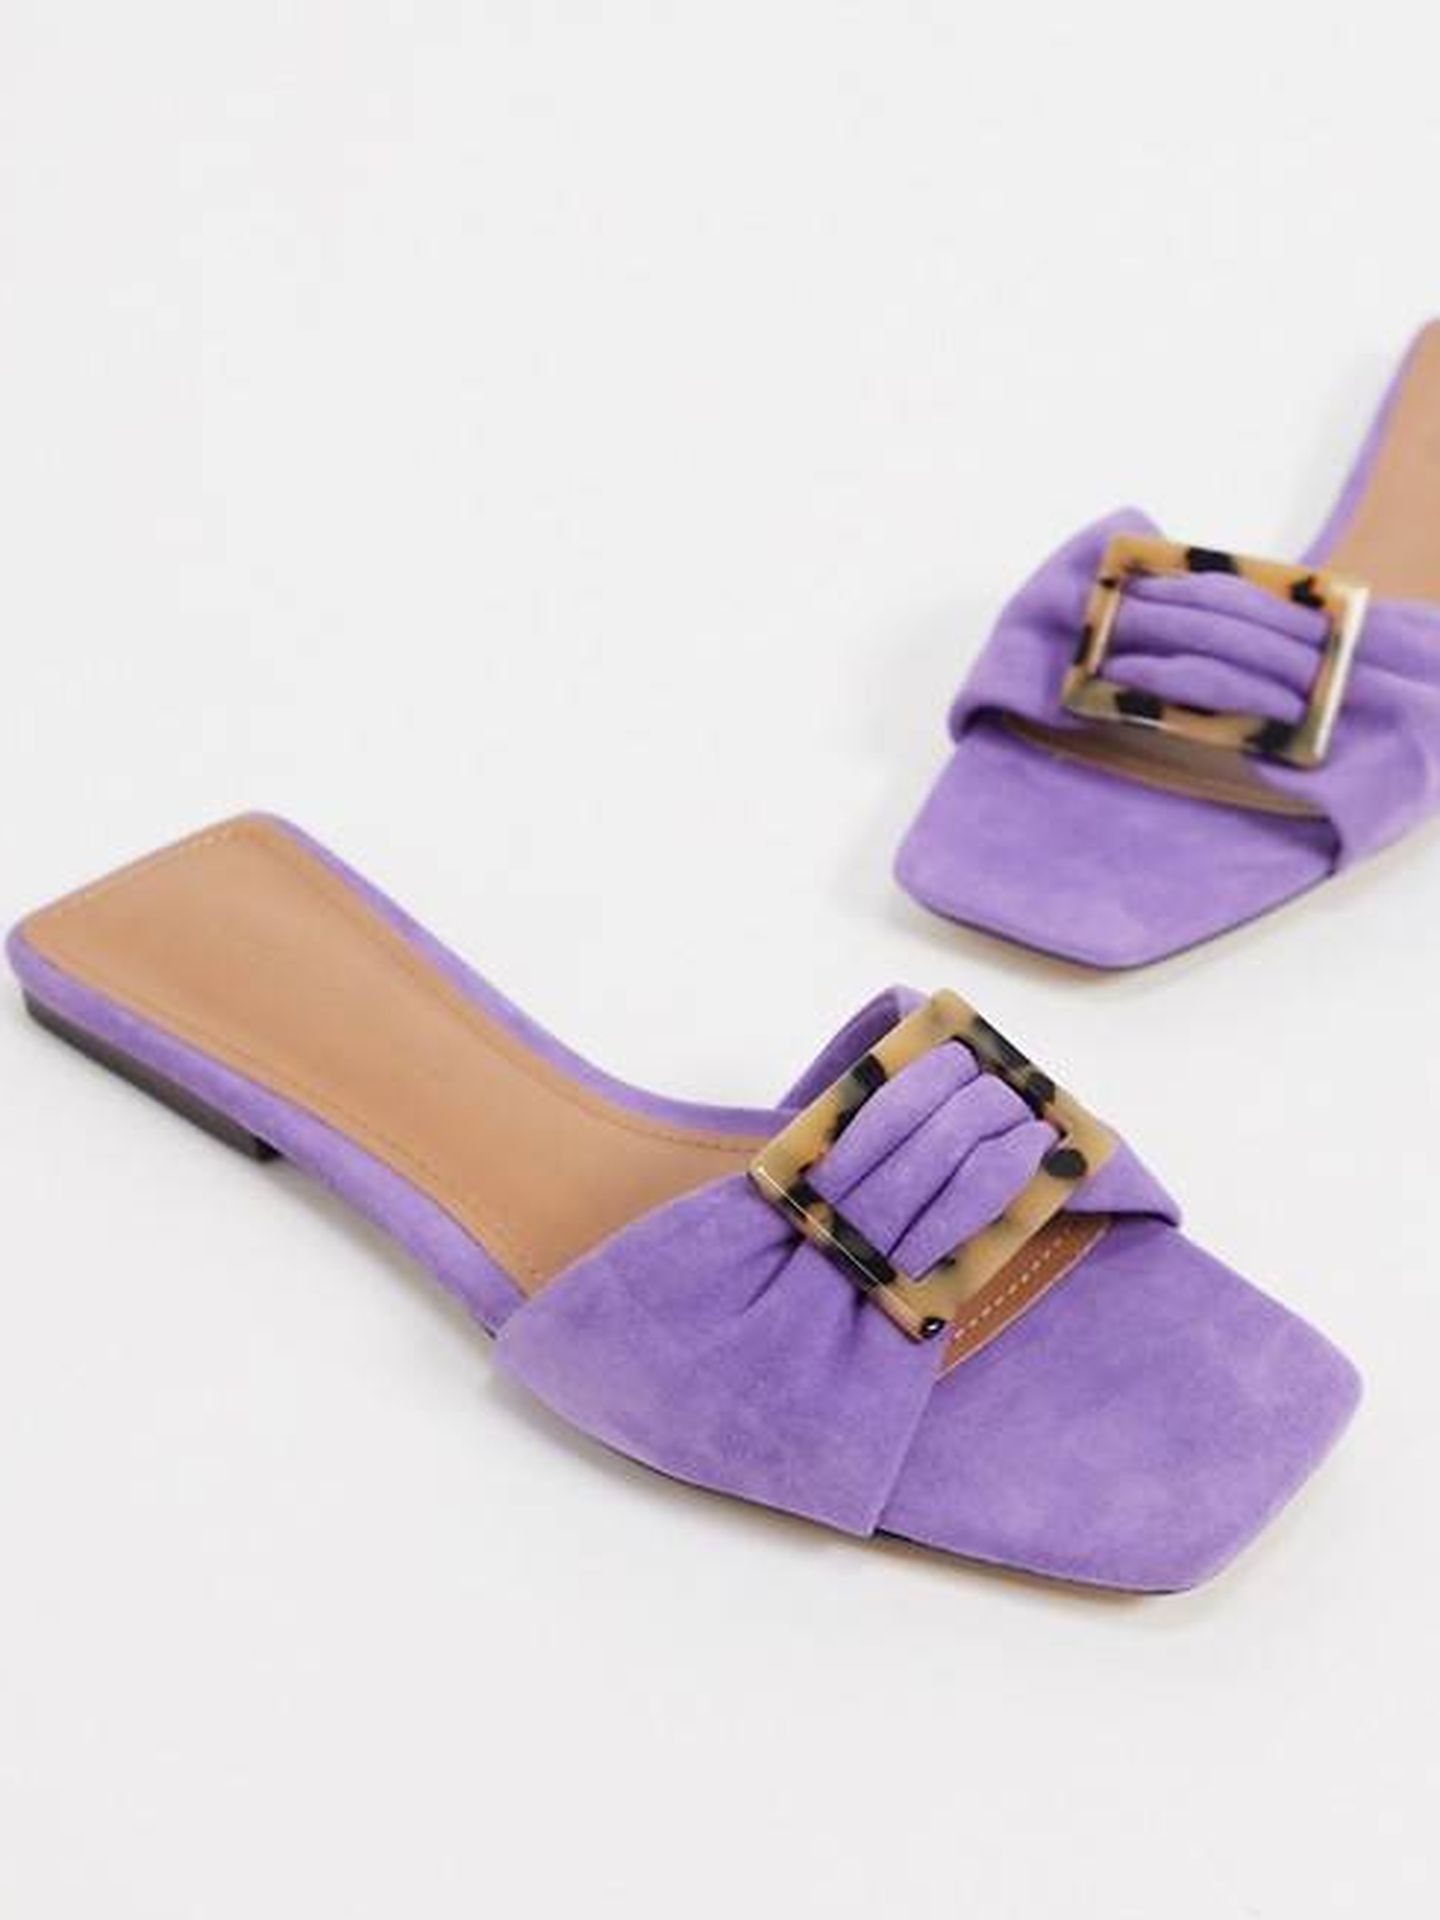 Las sandalias planas de color lila que vende Asos. (Cortesía)